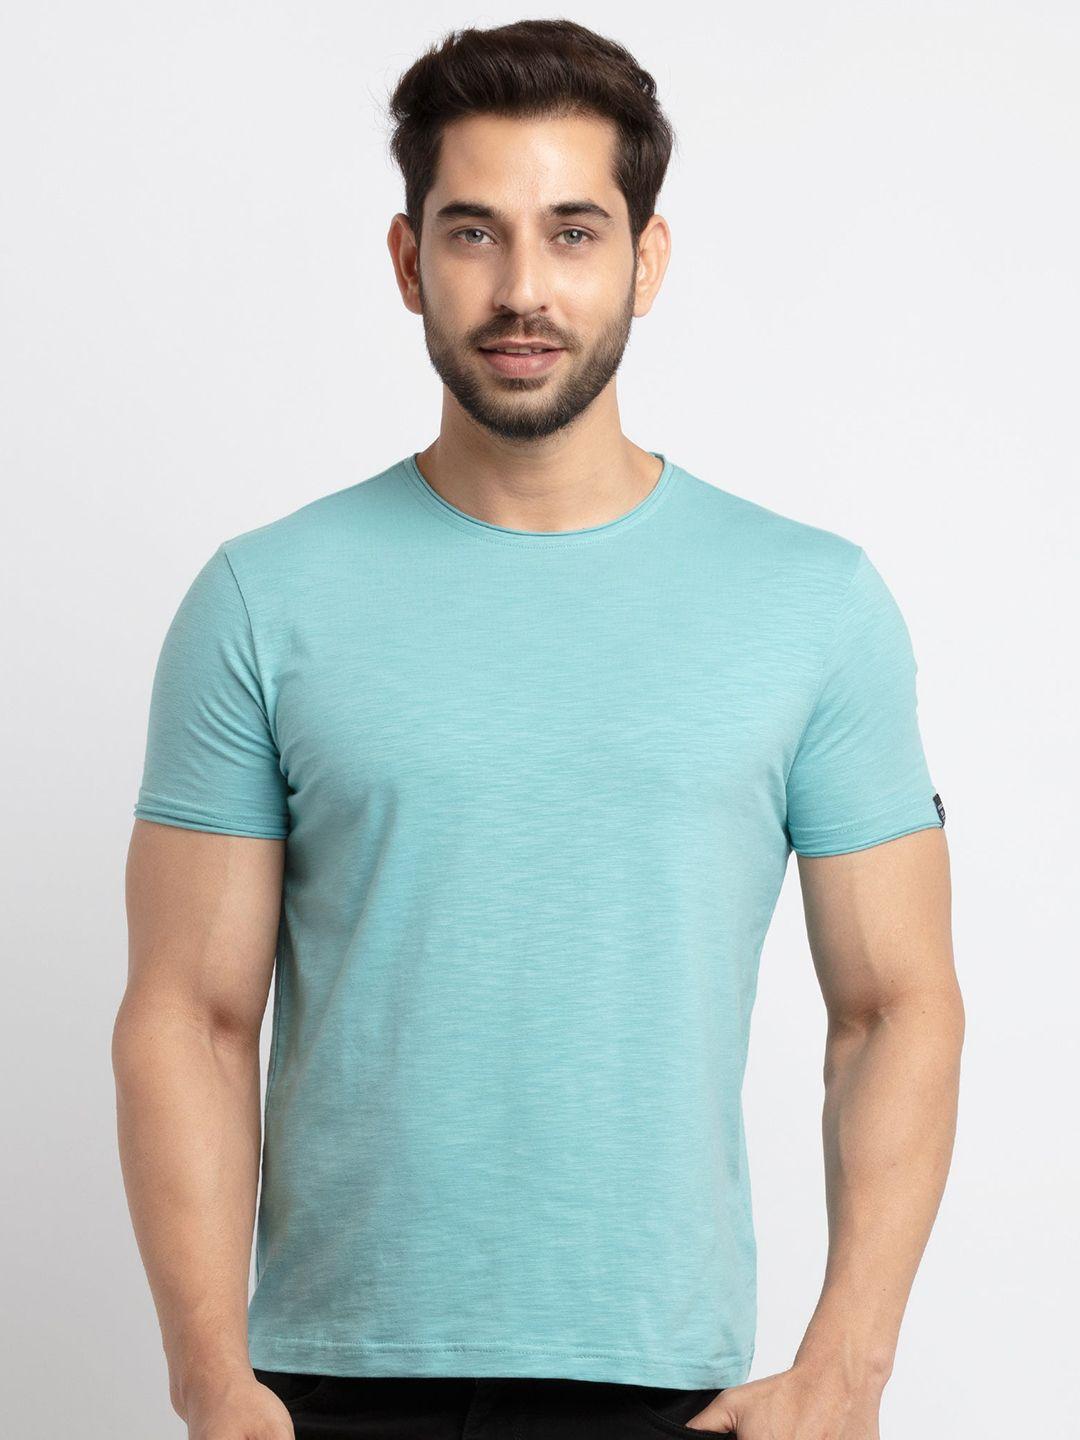 status quo men turquoise blue t-shirt